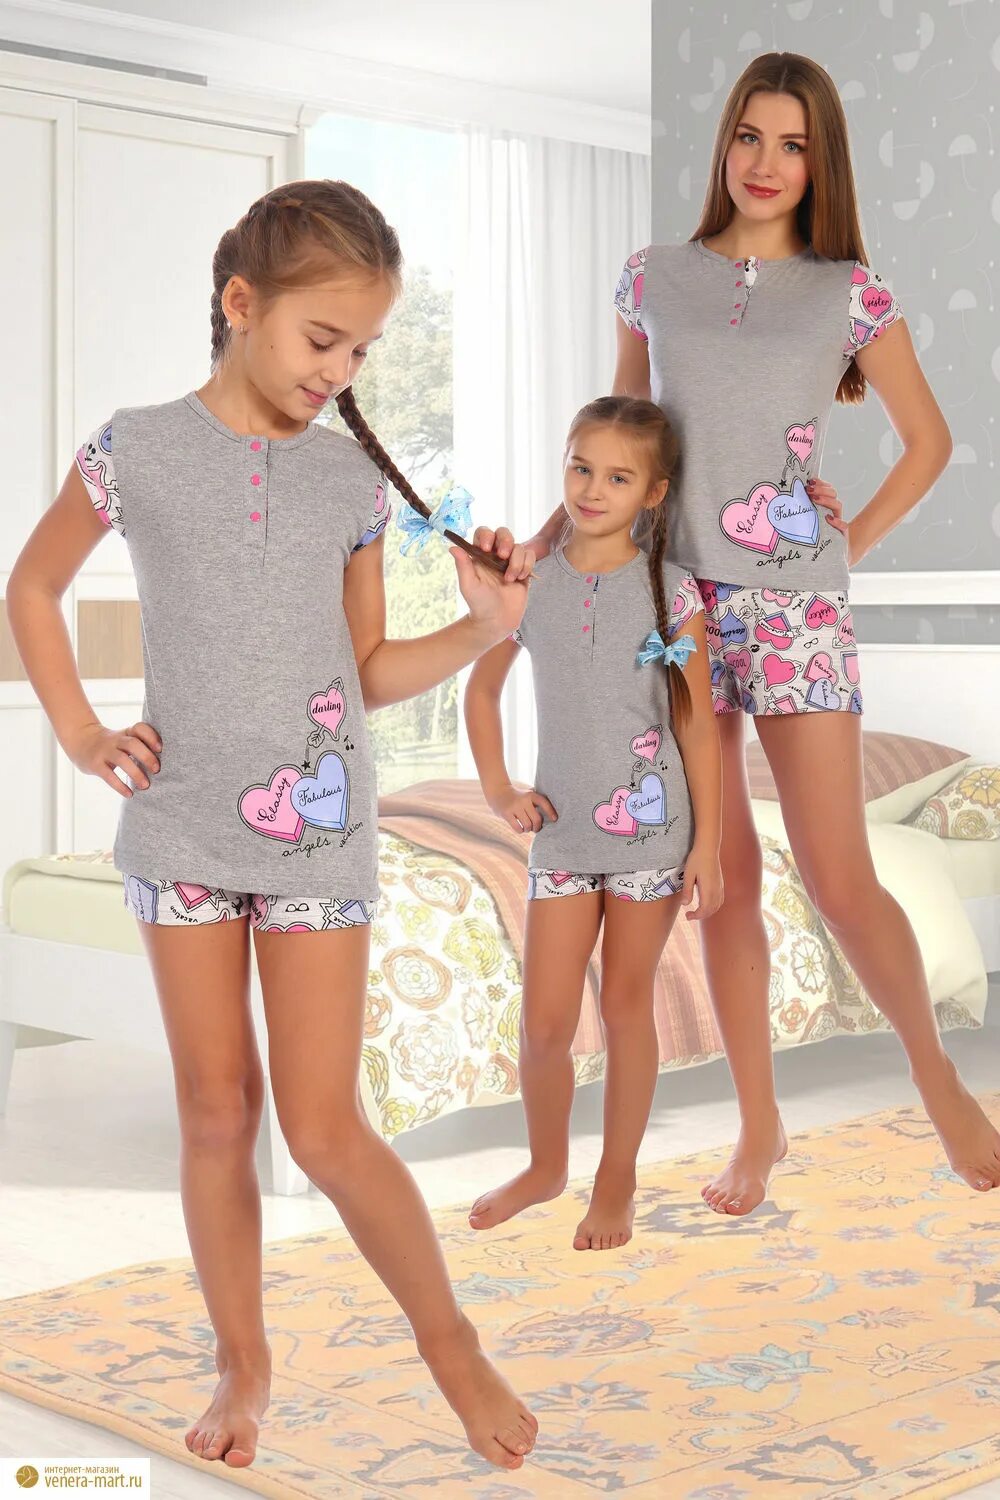 Детская пижама шортах. Пижама для девочки. Дети в пижамах. Детские пижамы. Домашняя одежда для девочек.